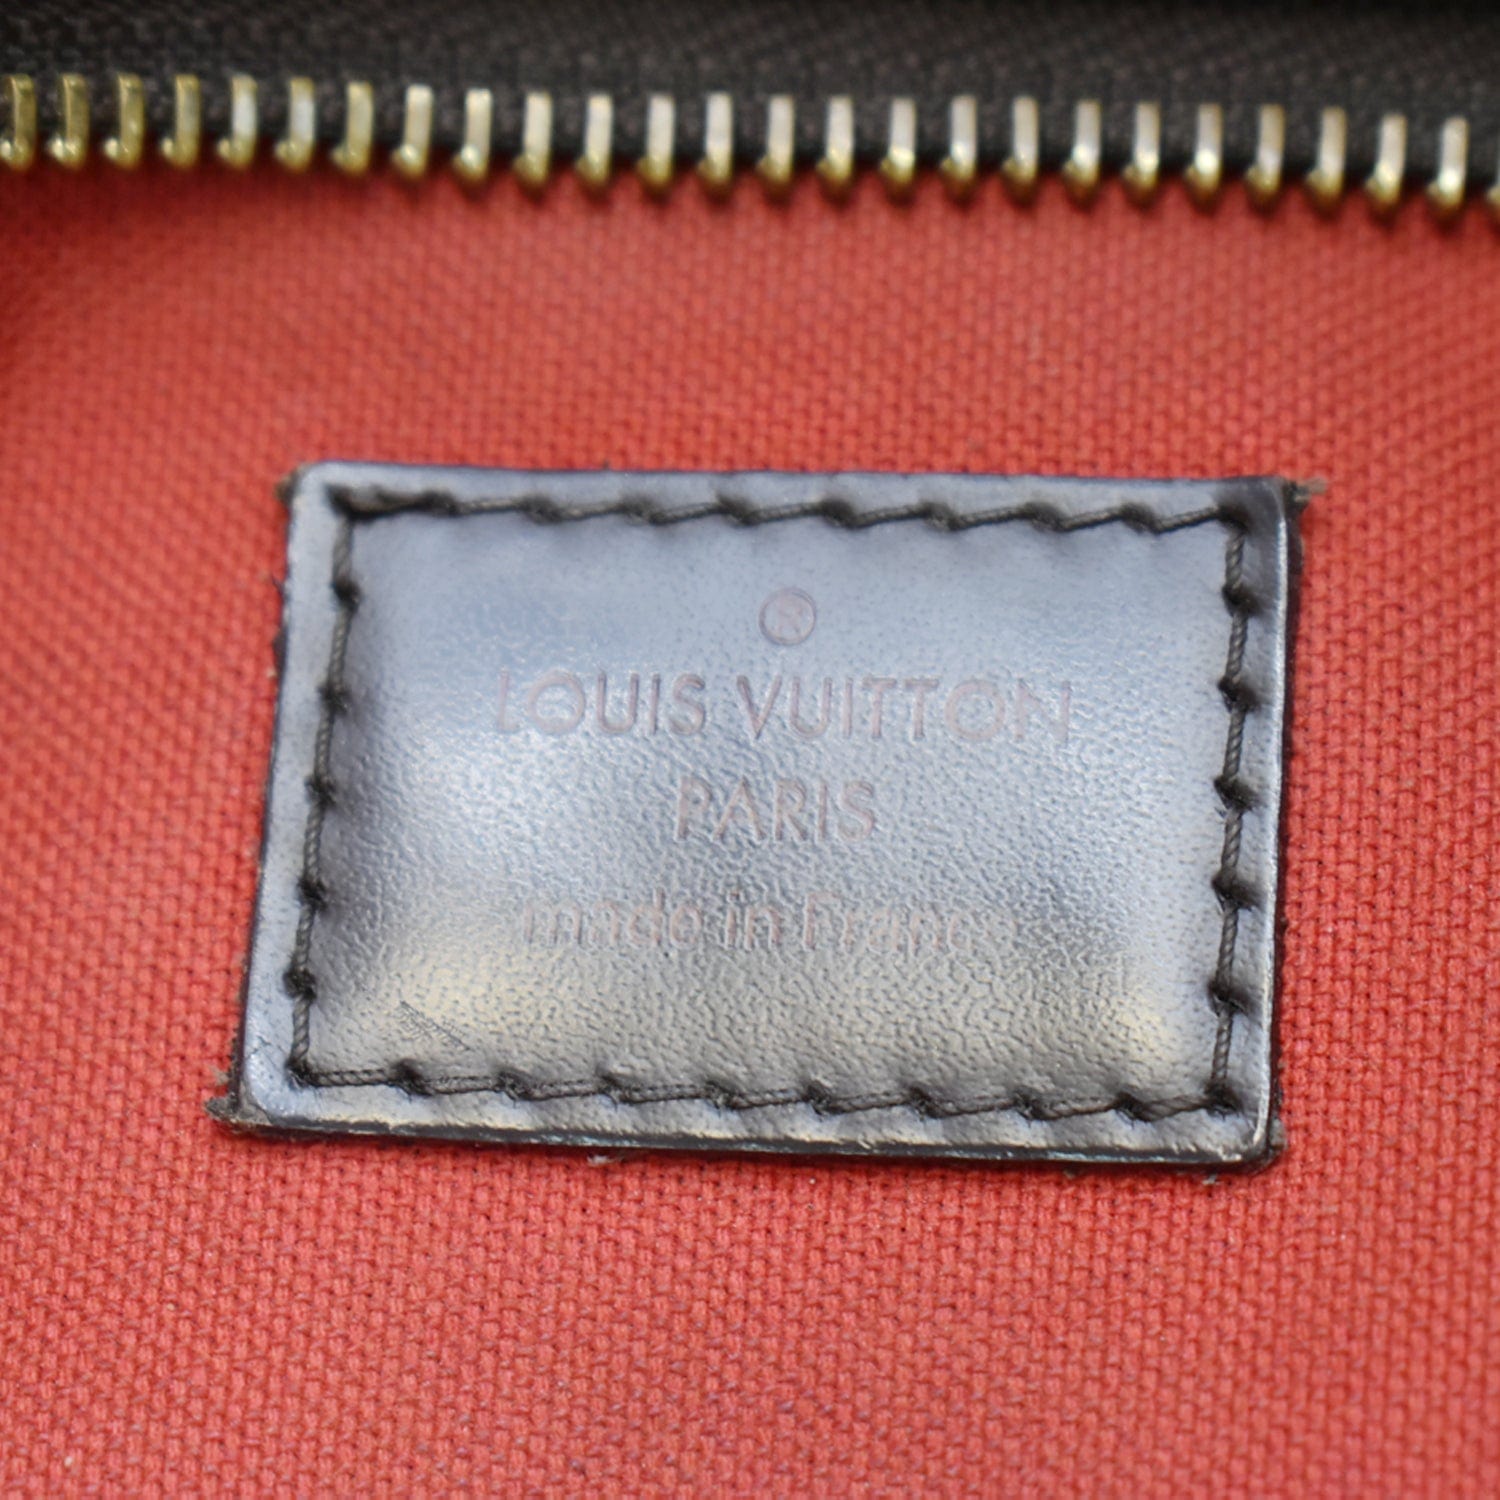 Louis Vuitton 2010 Pre-owned Bloomsbury GM Shoulder Bag - Brown